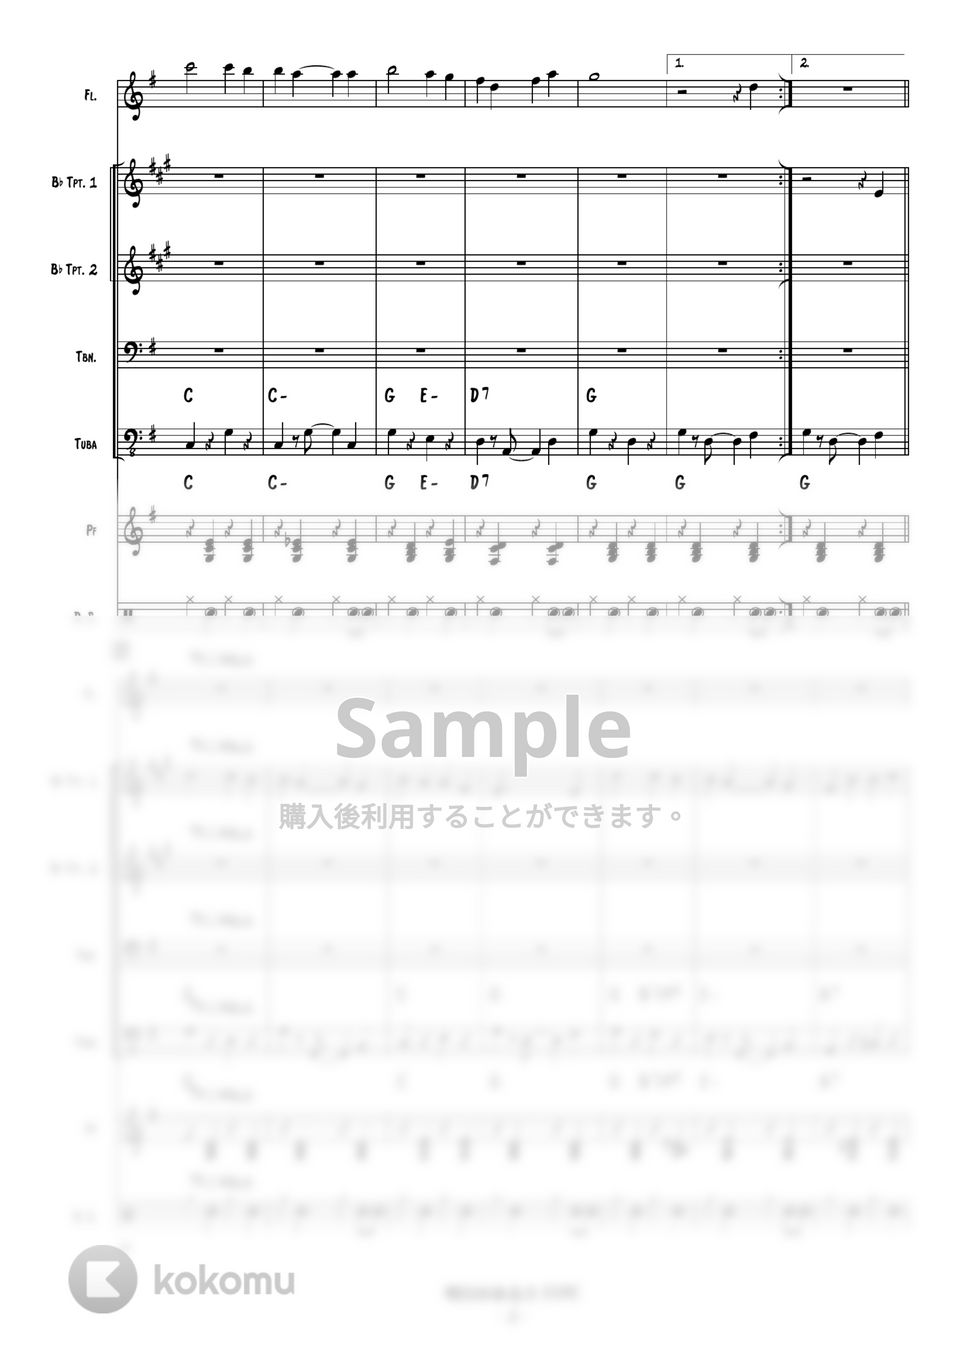 坂本九 - 明日があるさ (Tp2, Tb, Flute, Pf, Tuba) by 高田将利